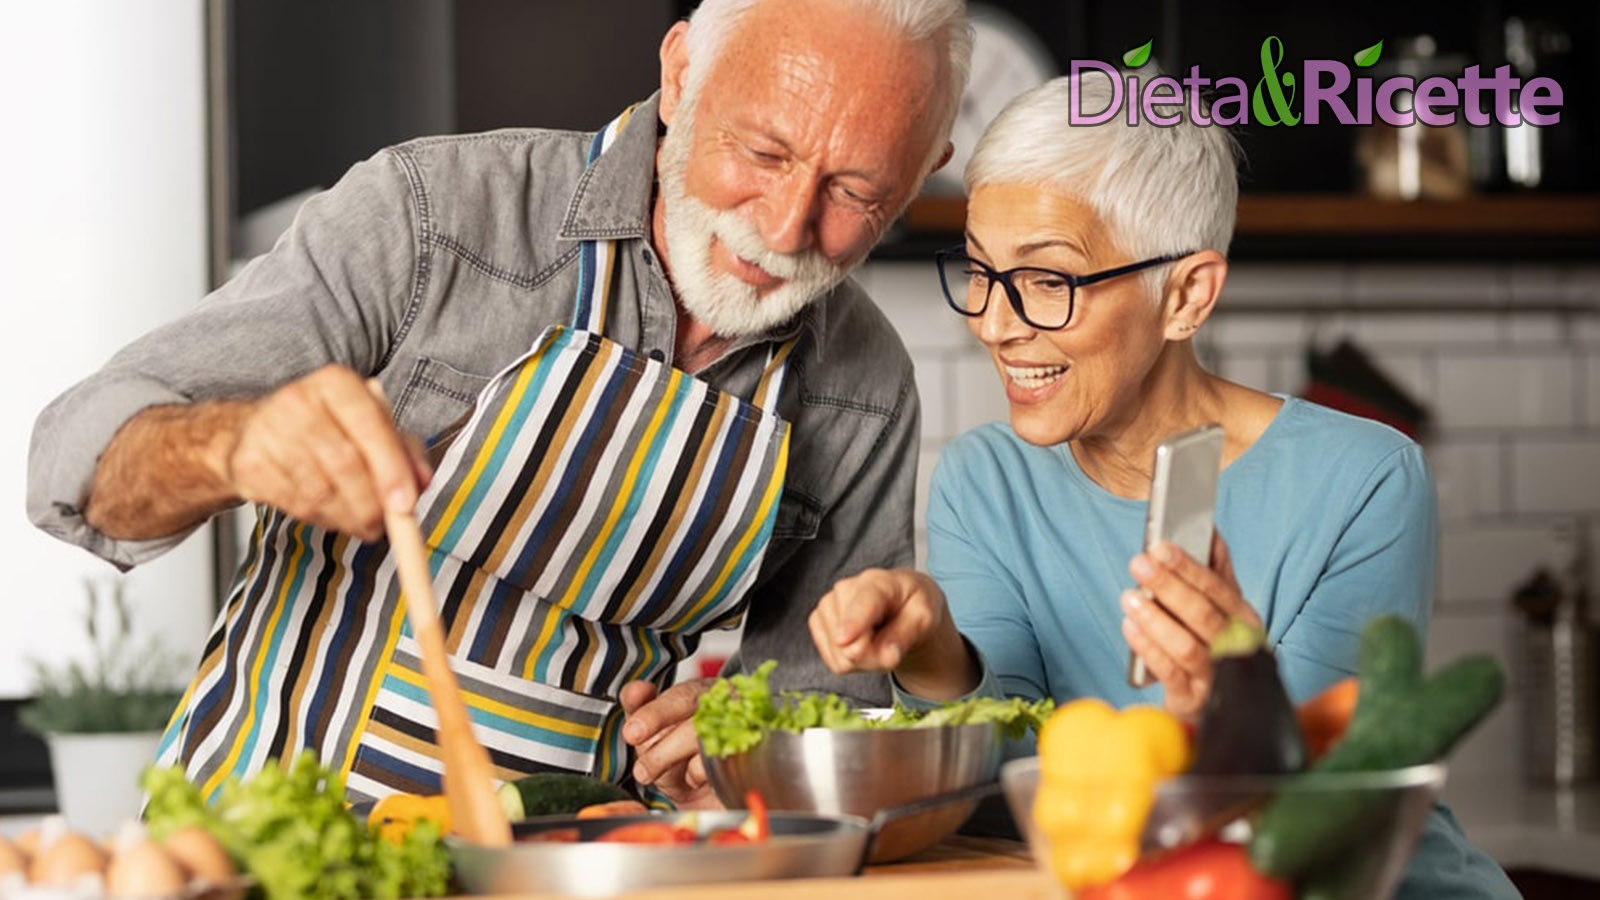 dieta mima digiuno longevita salute alimentazione ringiovanimento cellulare